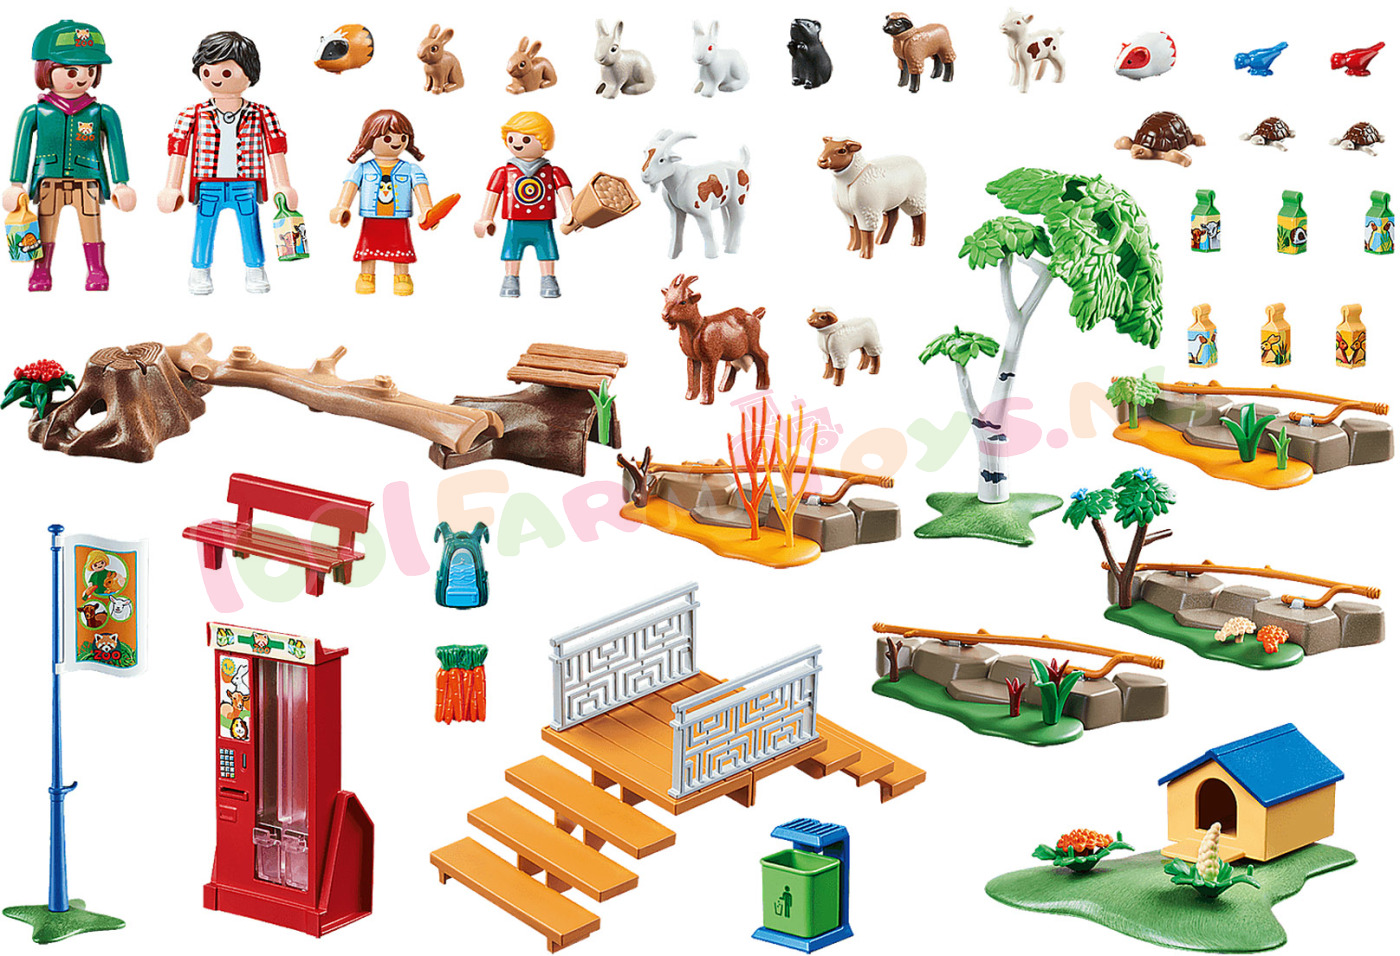 radar Verbeteren fysiek Playmobil Grote Kinderboerderij - 70342 - Playmobil Family Fun - Playmobil  - 1001Farmtoys landbouwspeelgoed - Let op dit product wordt niet meer